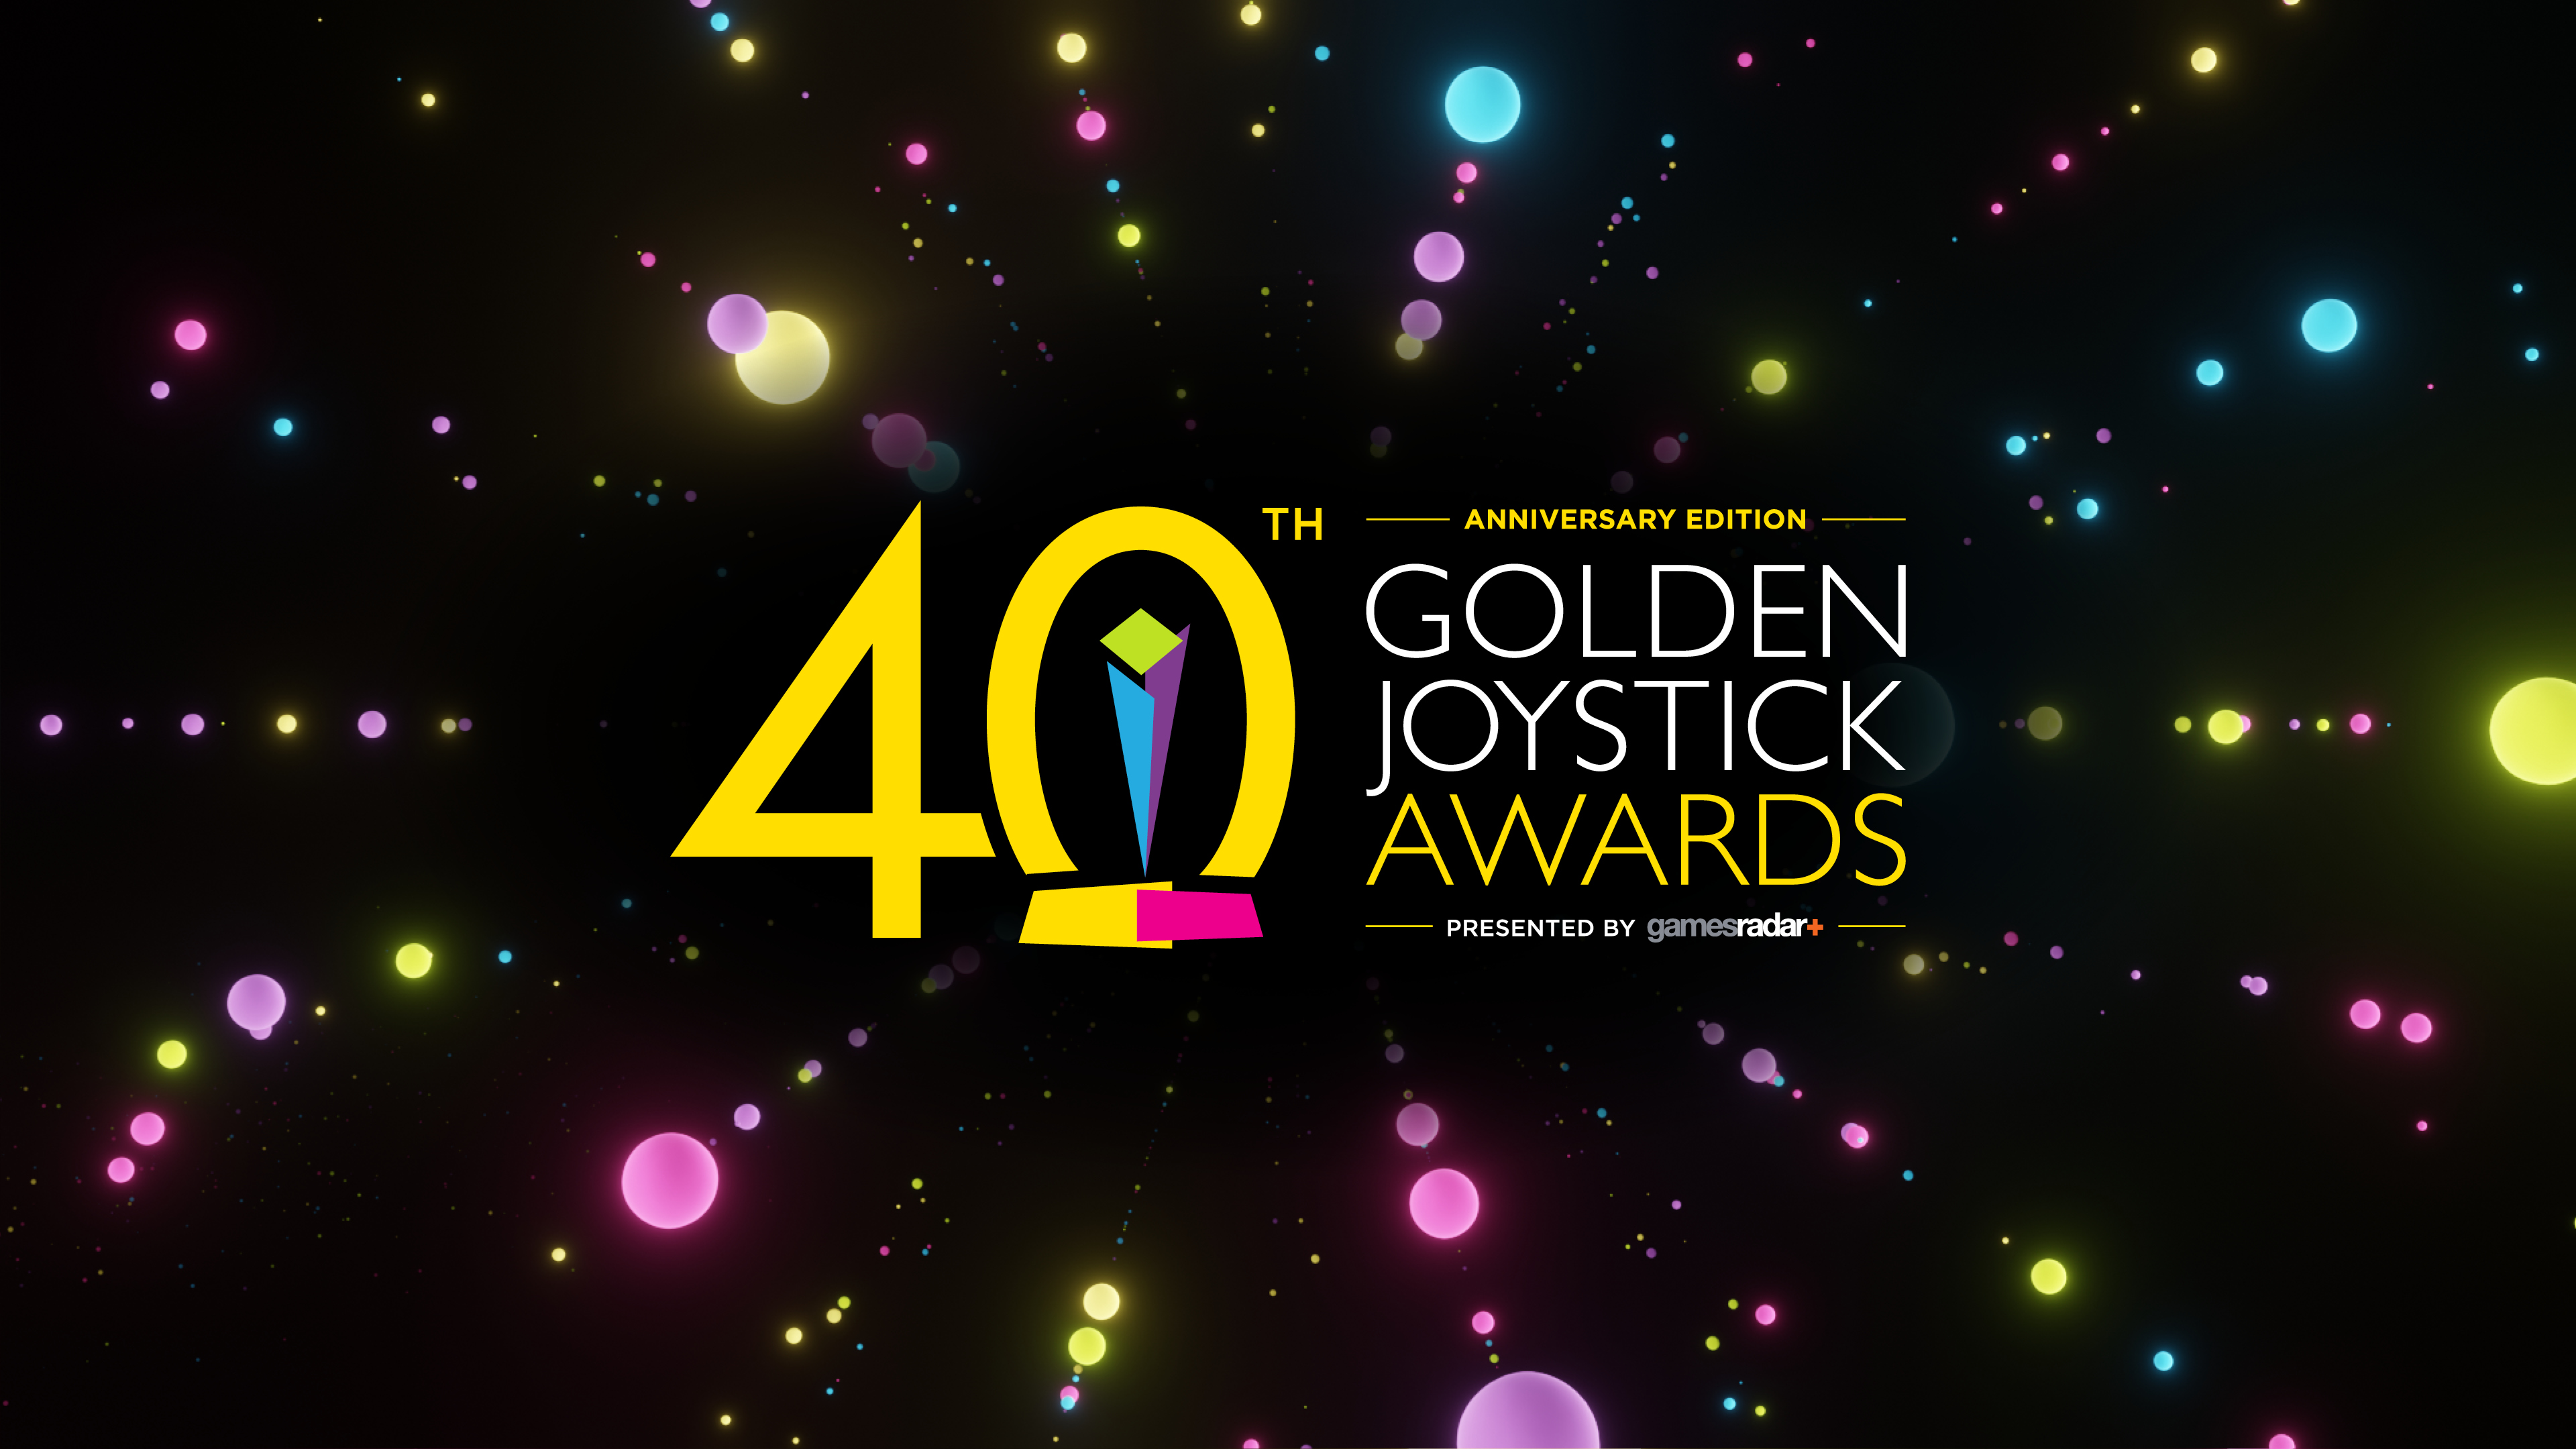 Golden Joystick Awards Rewatch the live show see the winners | GamesRadar+